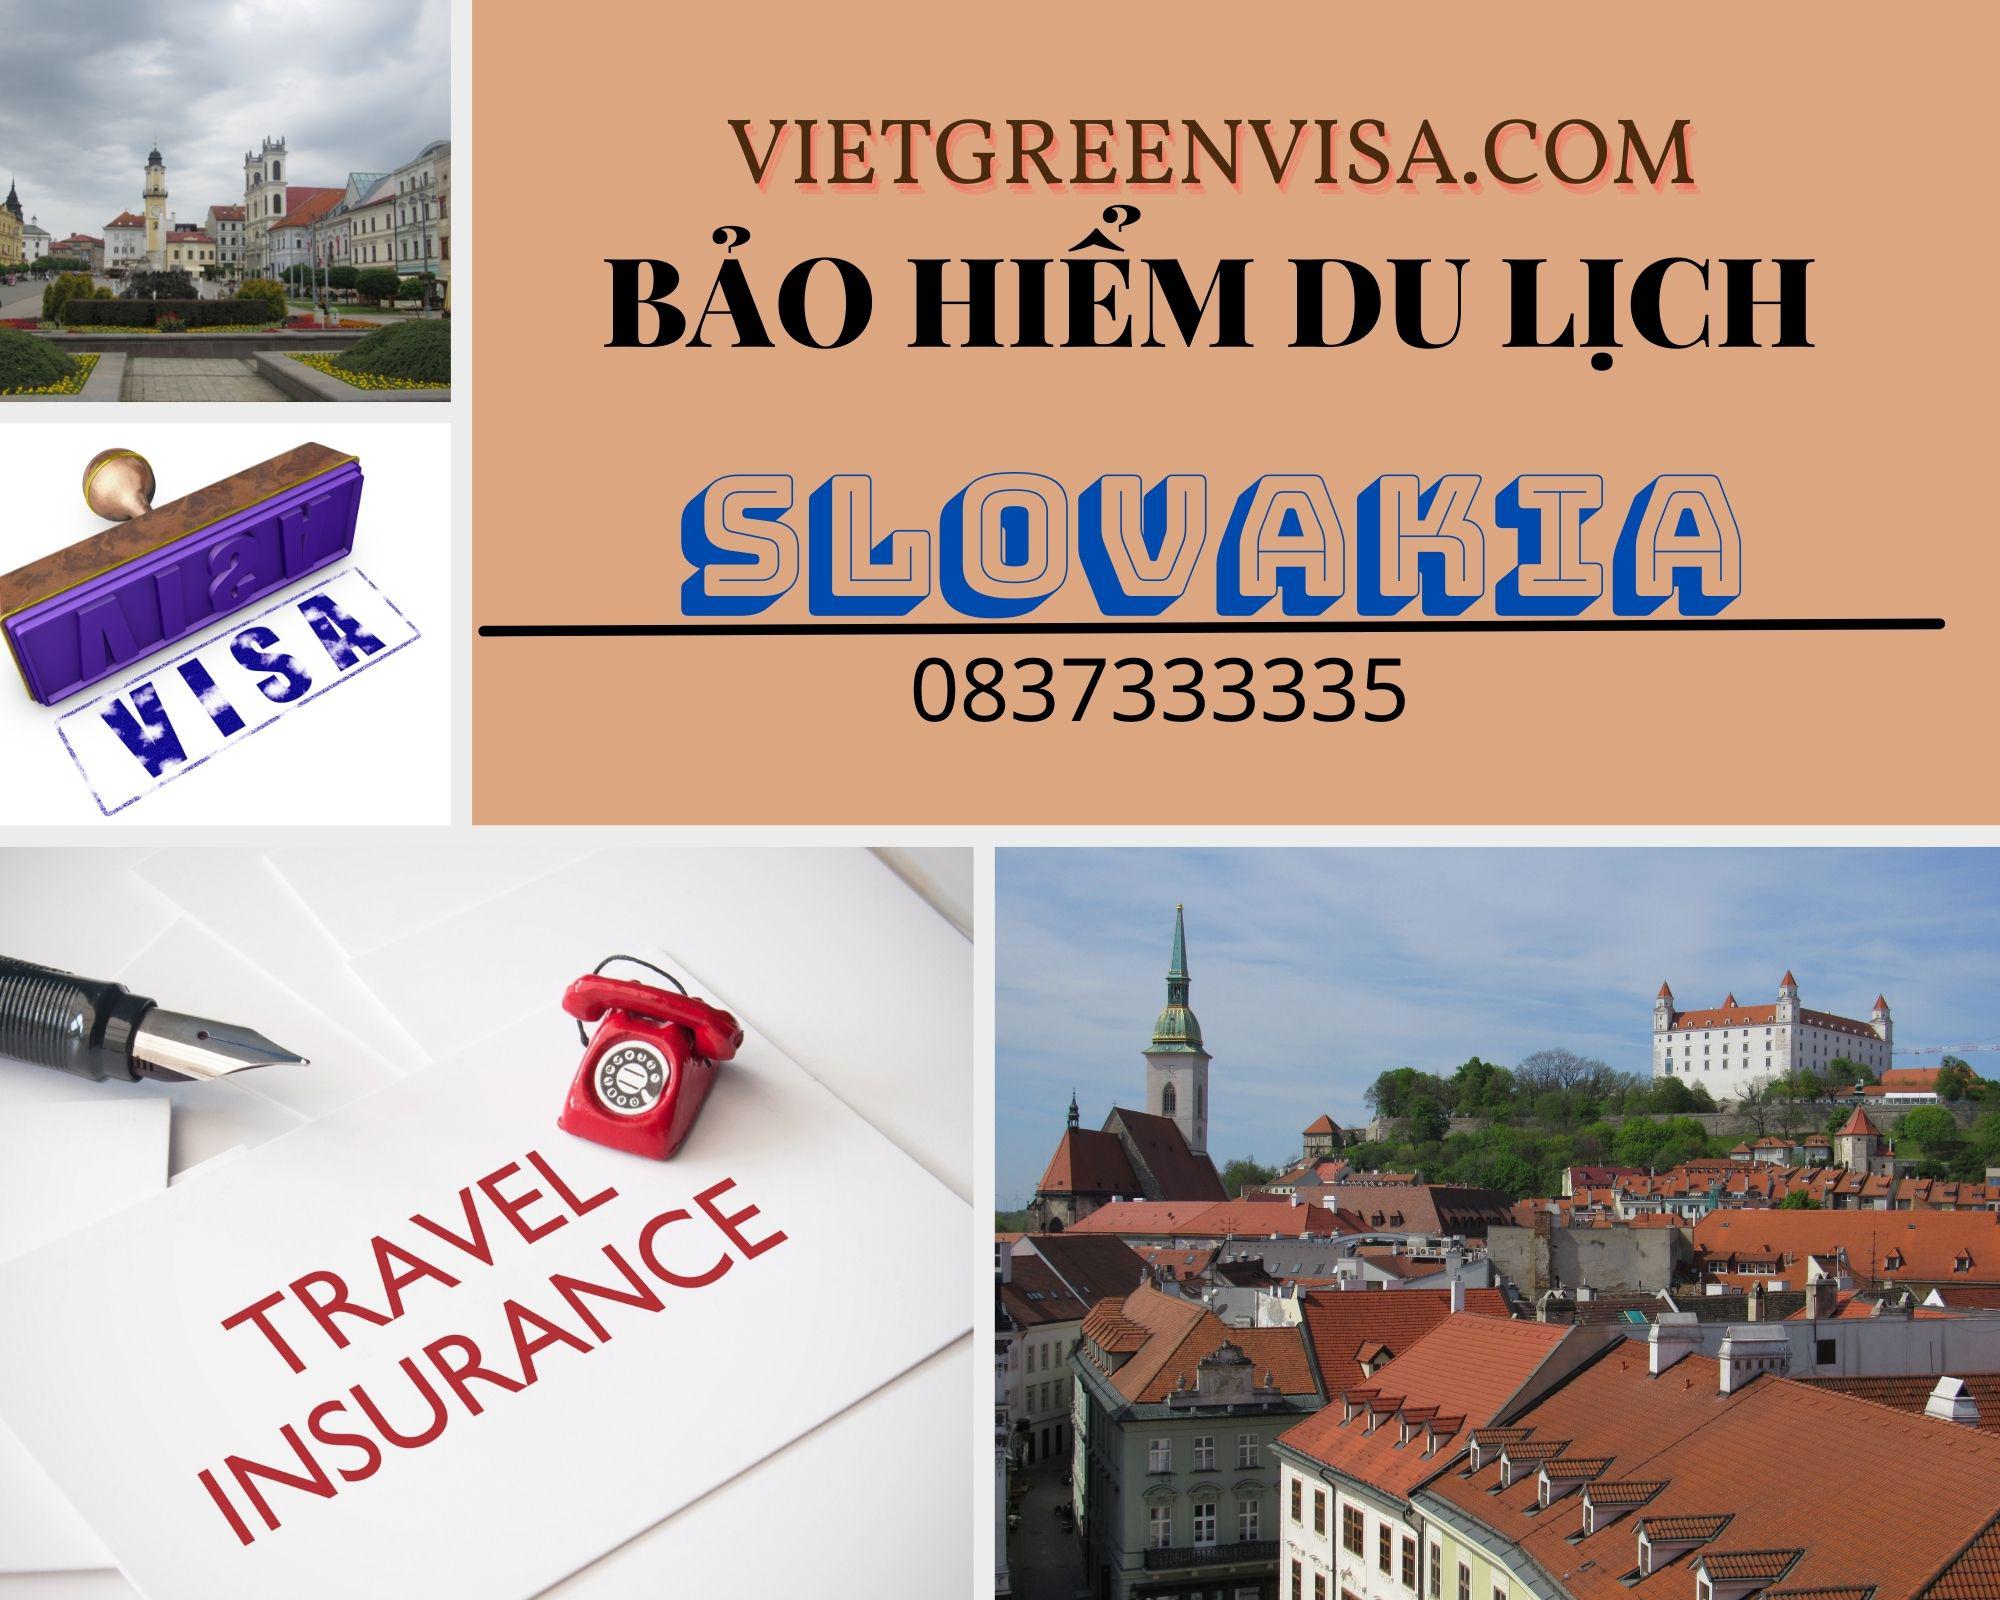 Đại lý bảo hiểm du lịch xin visa Slovakia giá rẻnhất